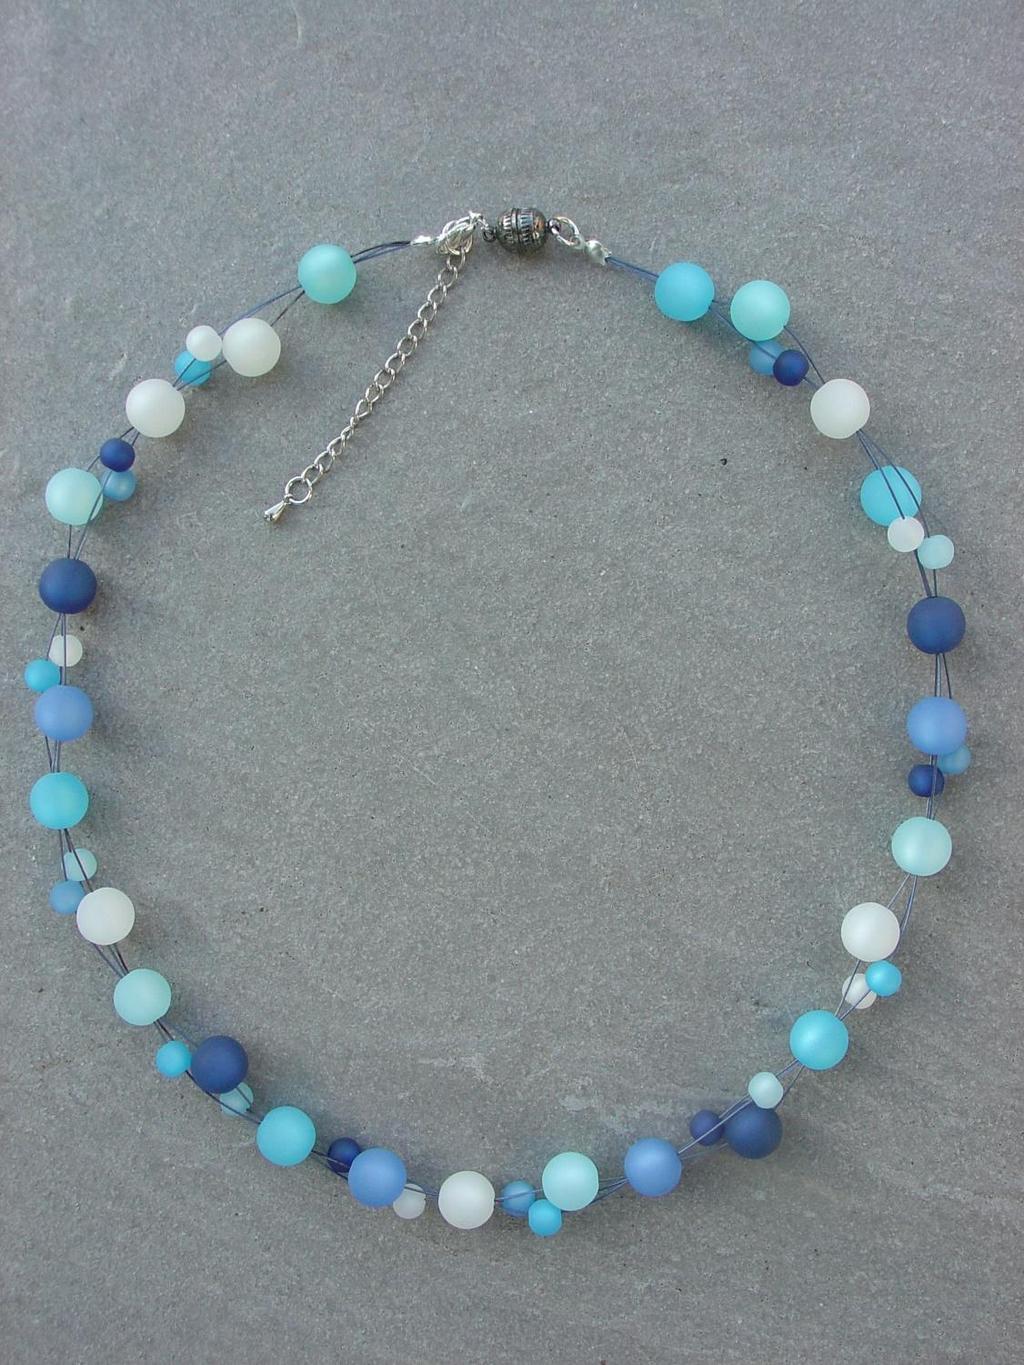 Blauregen Edle Polarisperlen in den Himmelsfarben auf blauem Dreifachfaden. Unterschiedlich große Perlen präsentieren sich sportlich leicht.